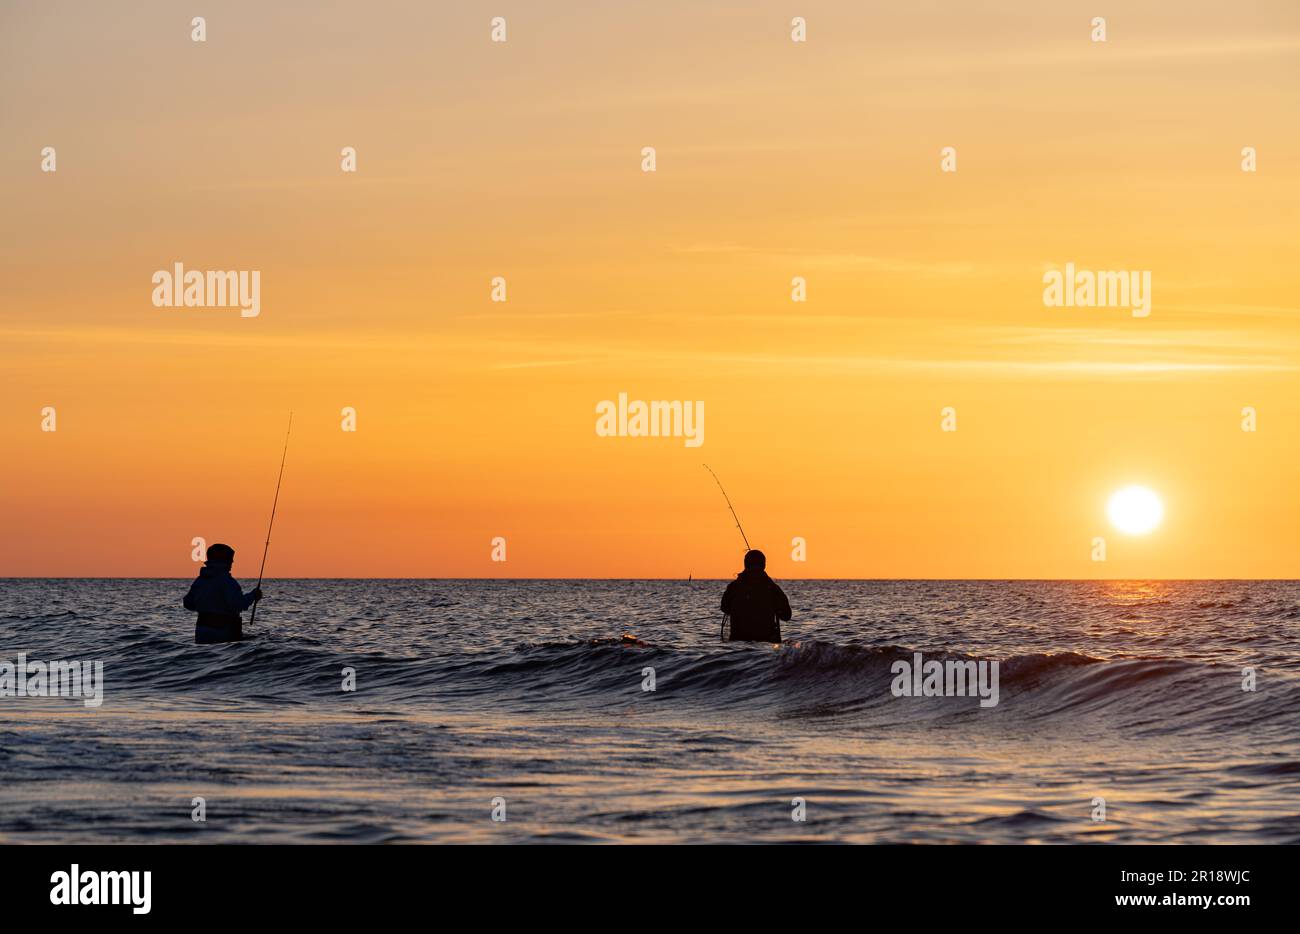 Las siluetas de dos pescadores en pantalones impermeables pescando frente a una puesta de sol naranja de ensueño en el mar Báltico. Están de pie en el medio de Foto de stock